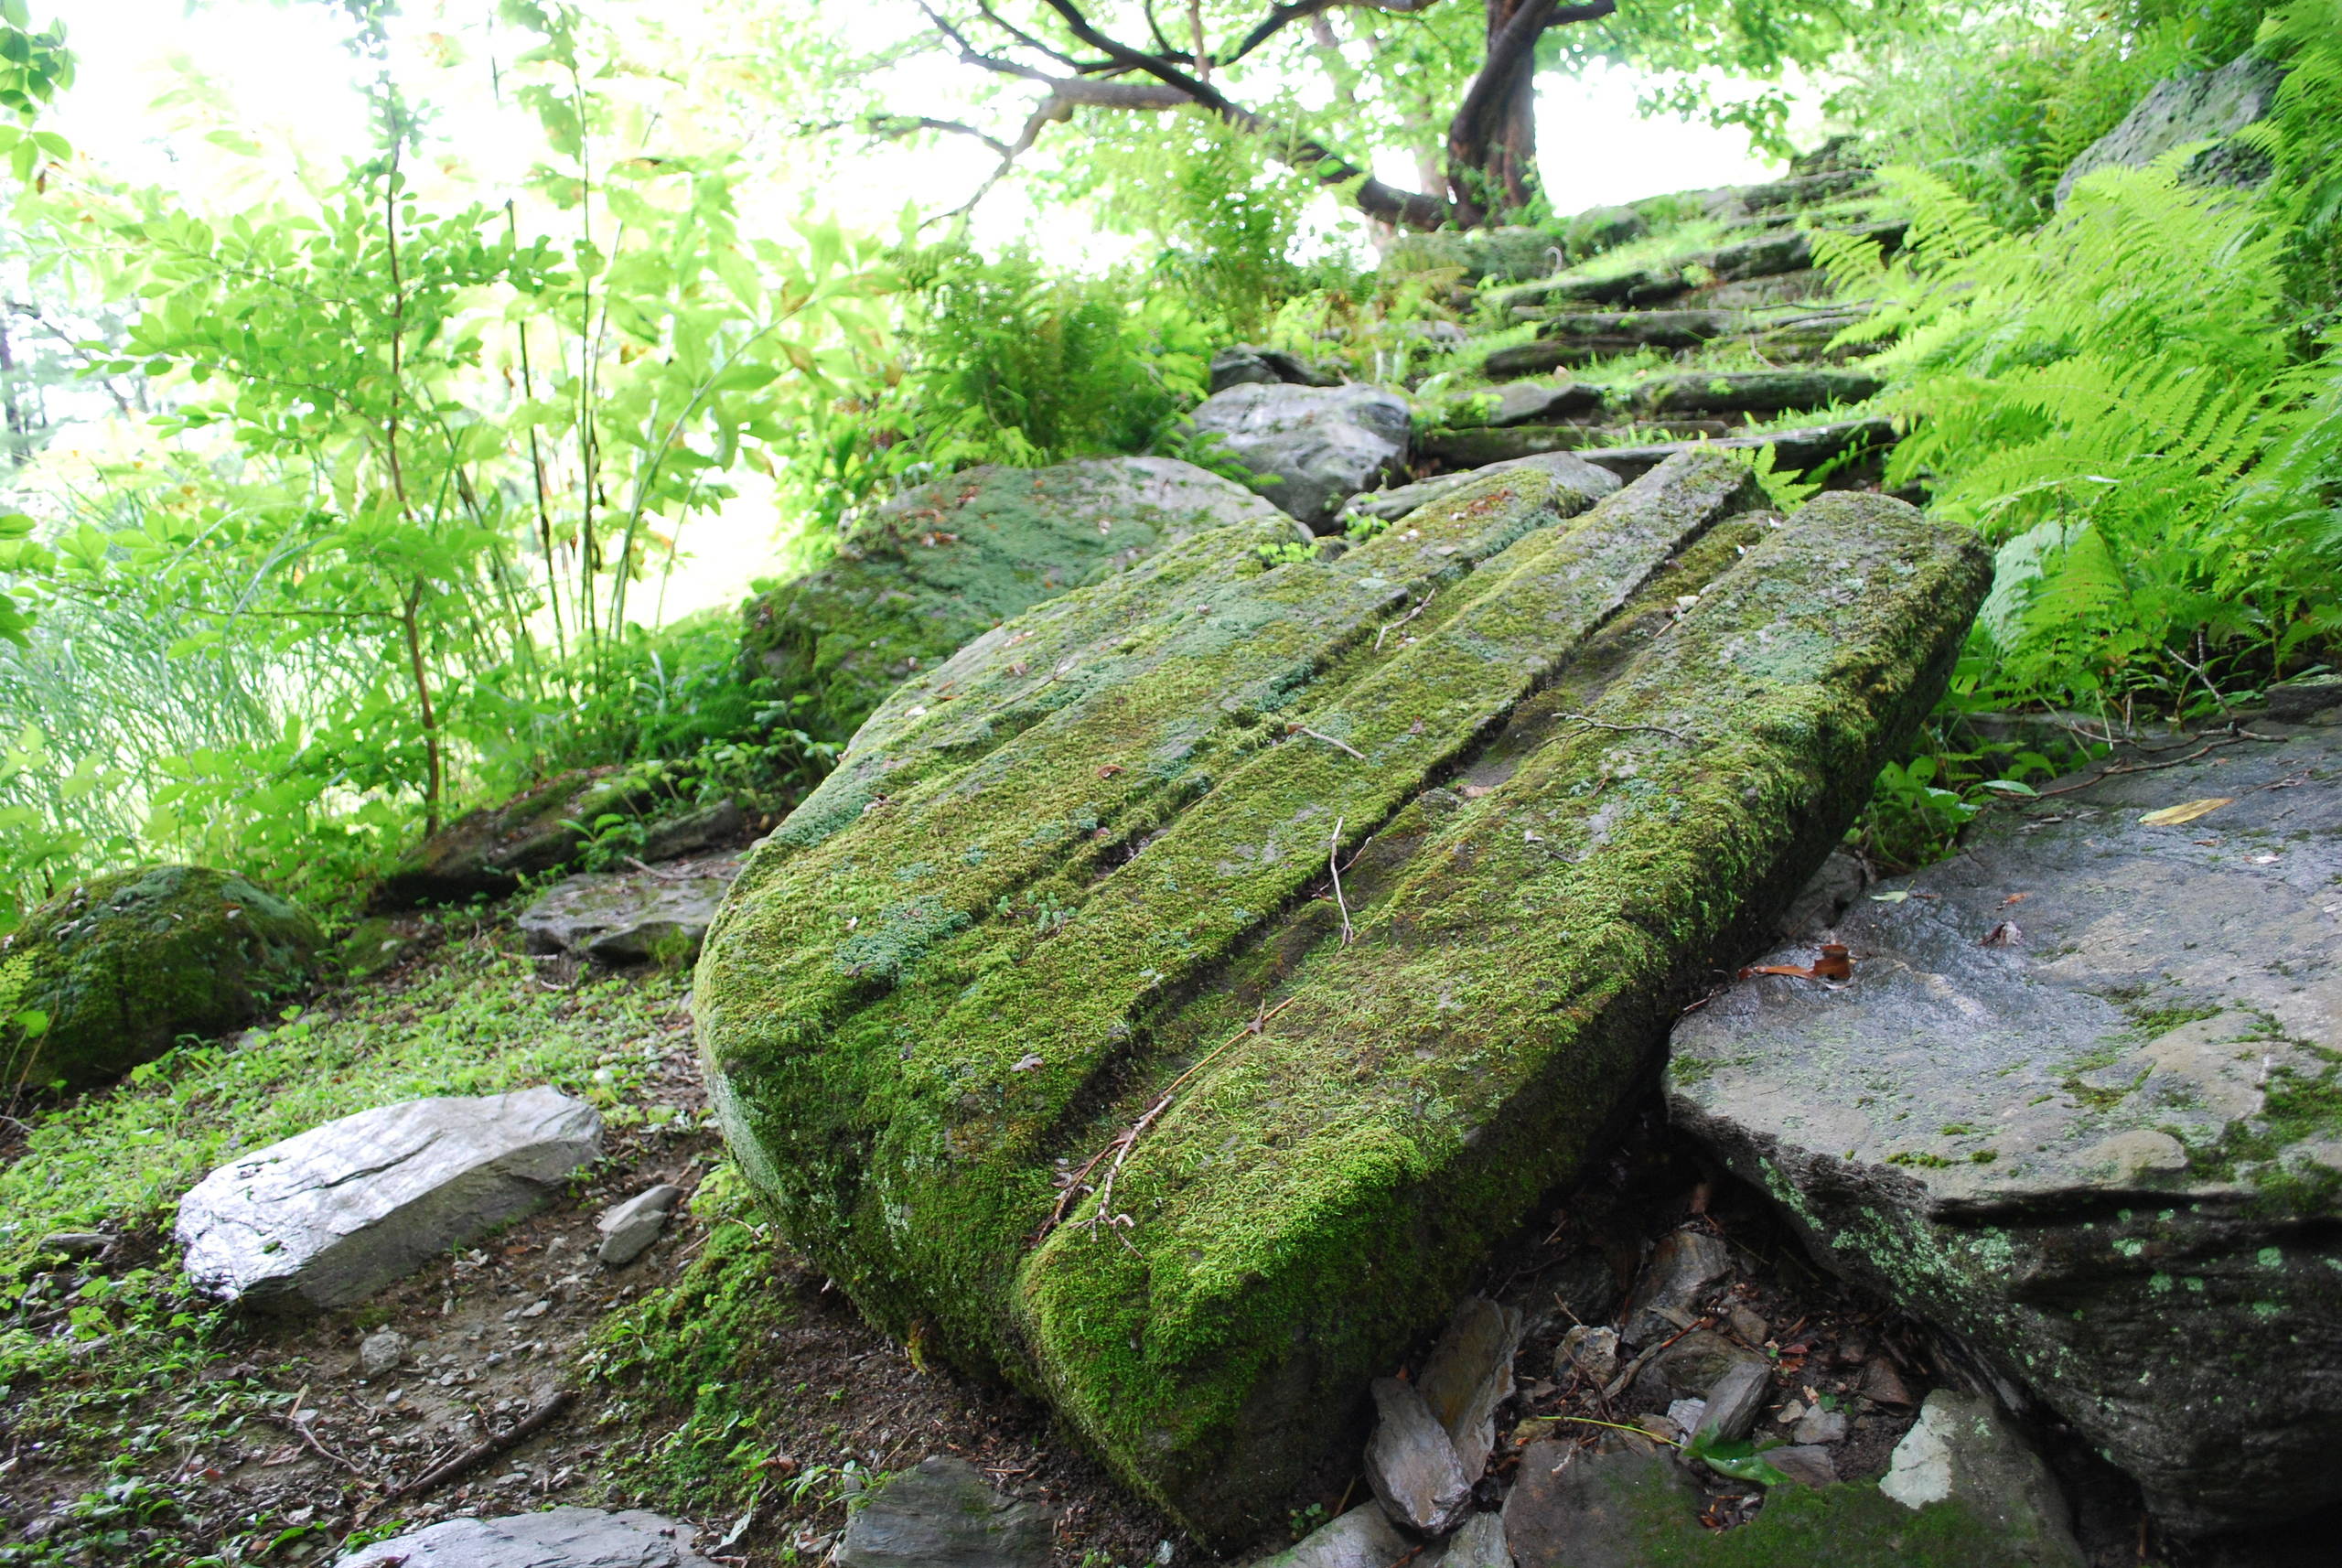 Carved boulder